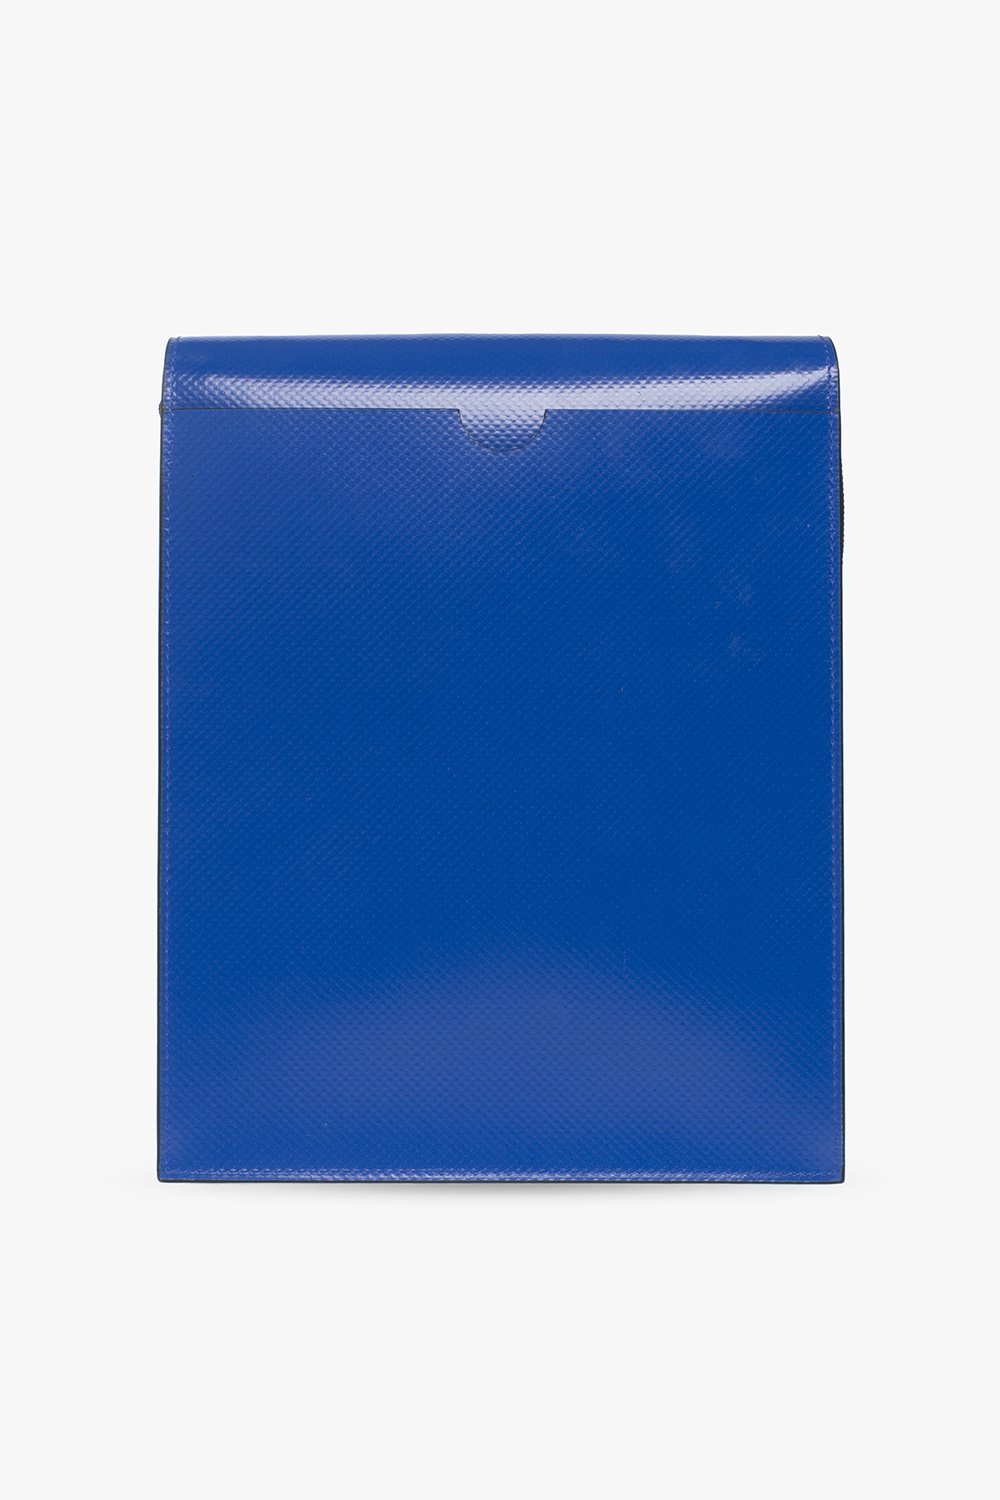 marni case ‘Tribeca’ shoulder bag